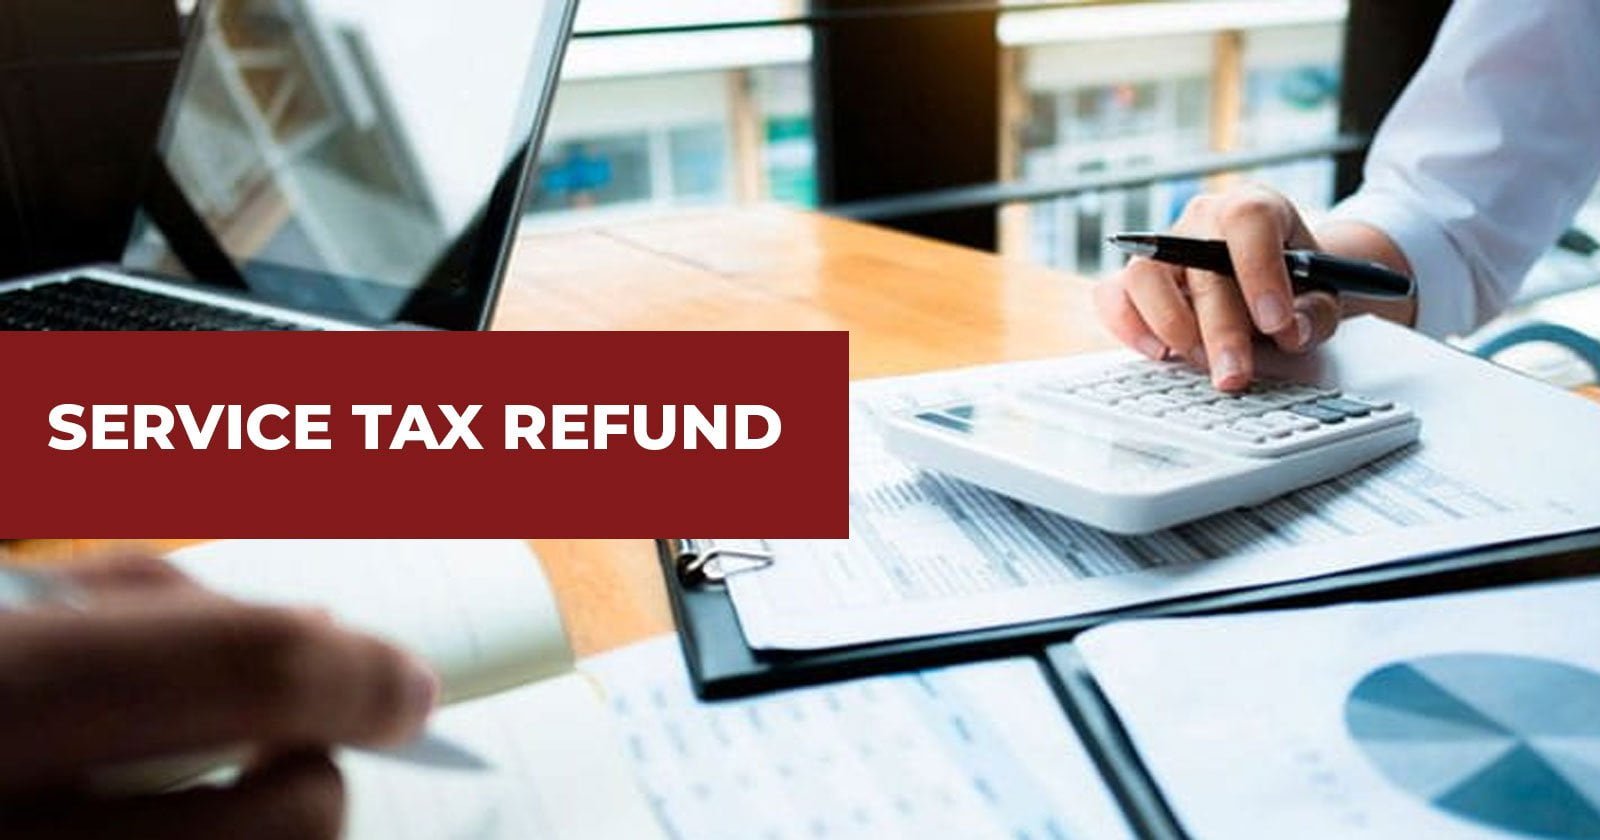 Refund - authority - Refund - Service - Tax - CESTAT - TAXSCAN